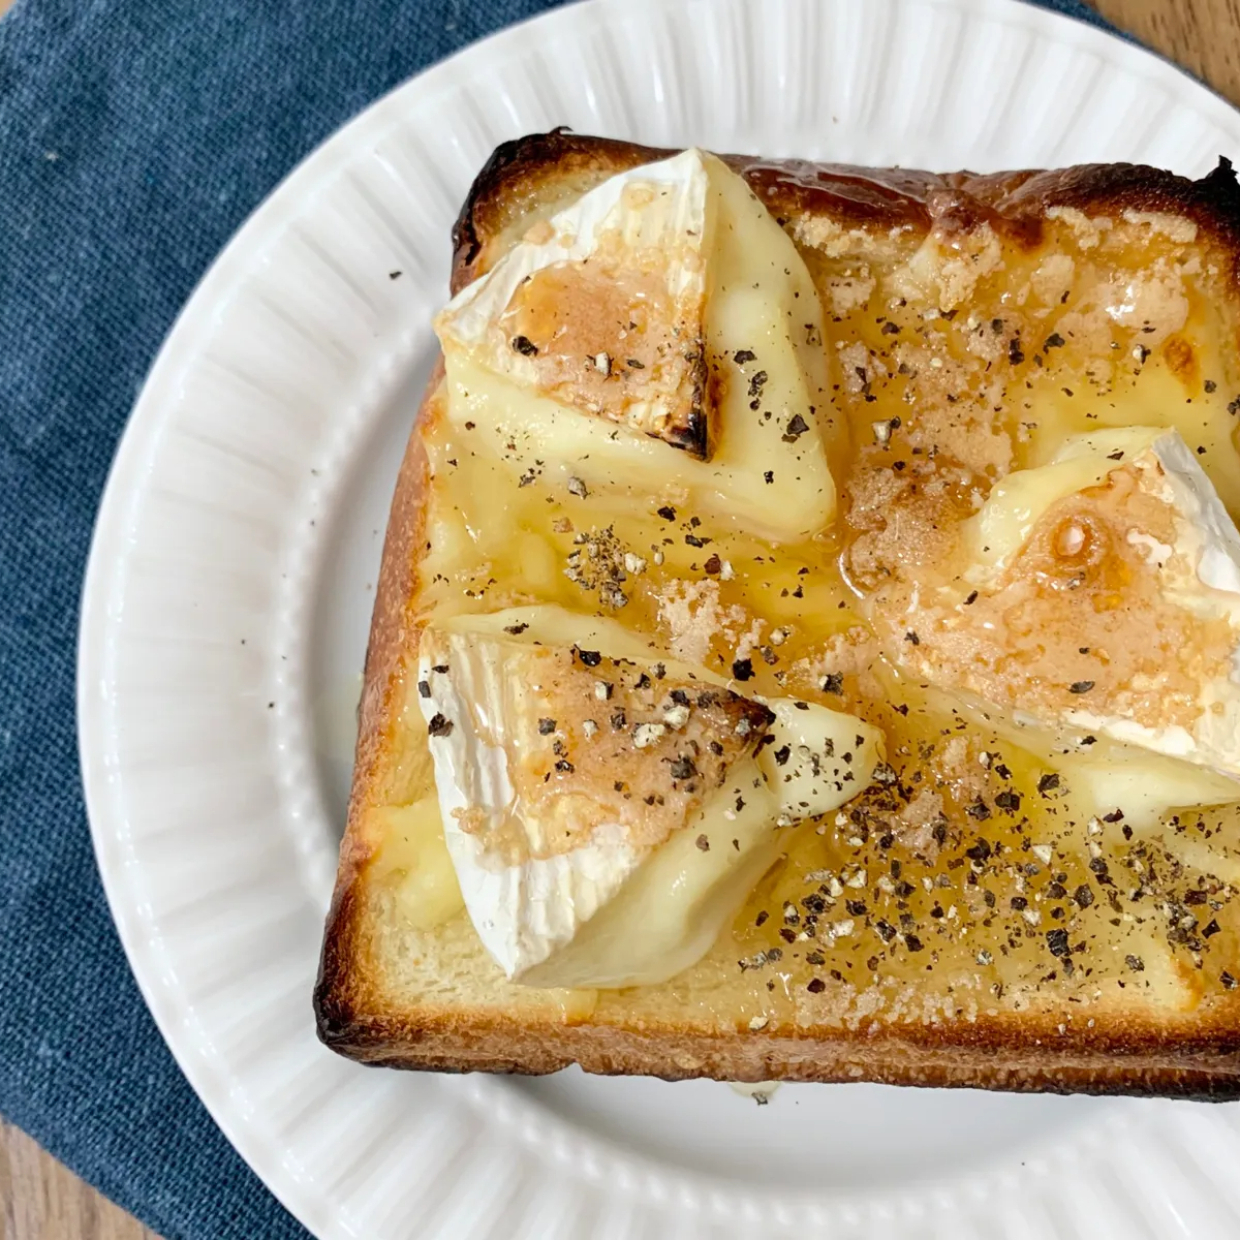  食パンでつくる“簡単絶品スイーツ”レシピ2選 